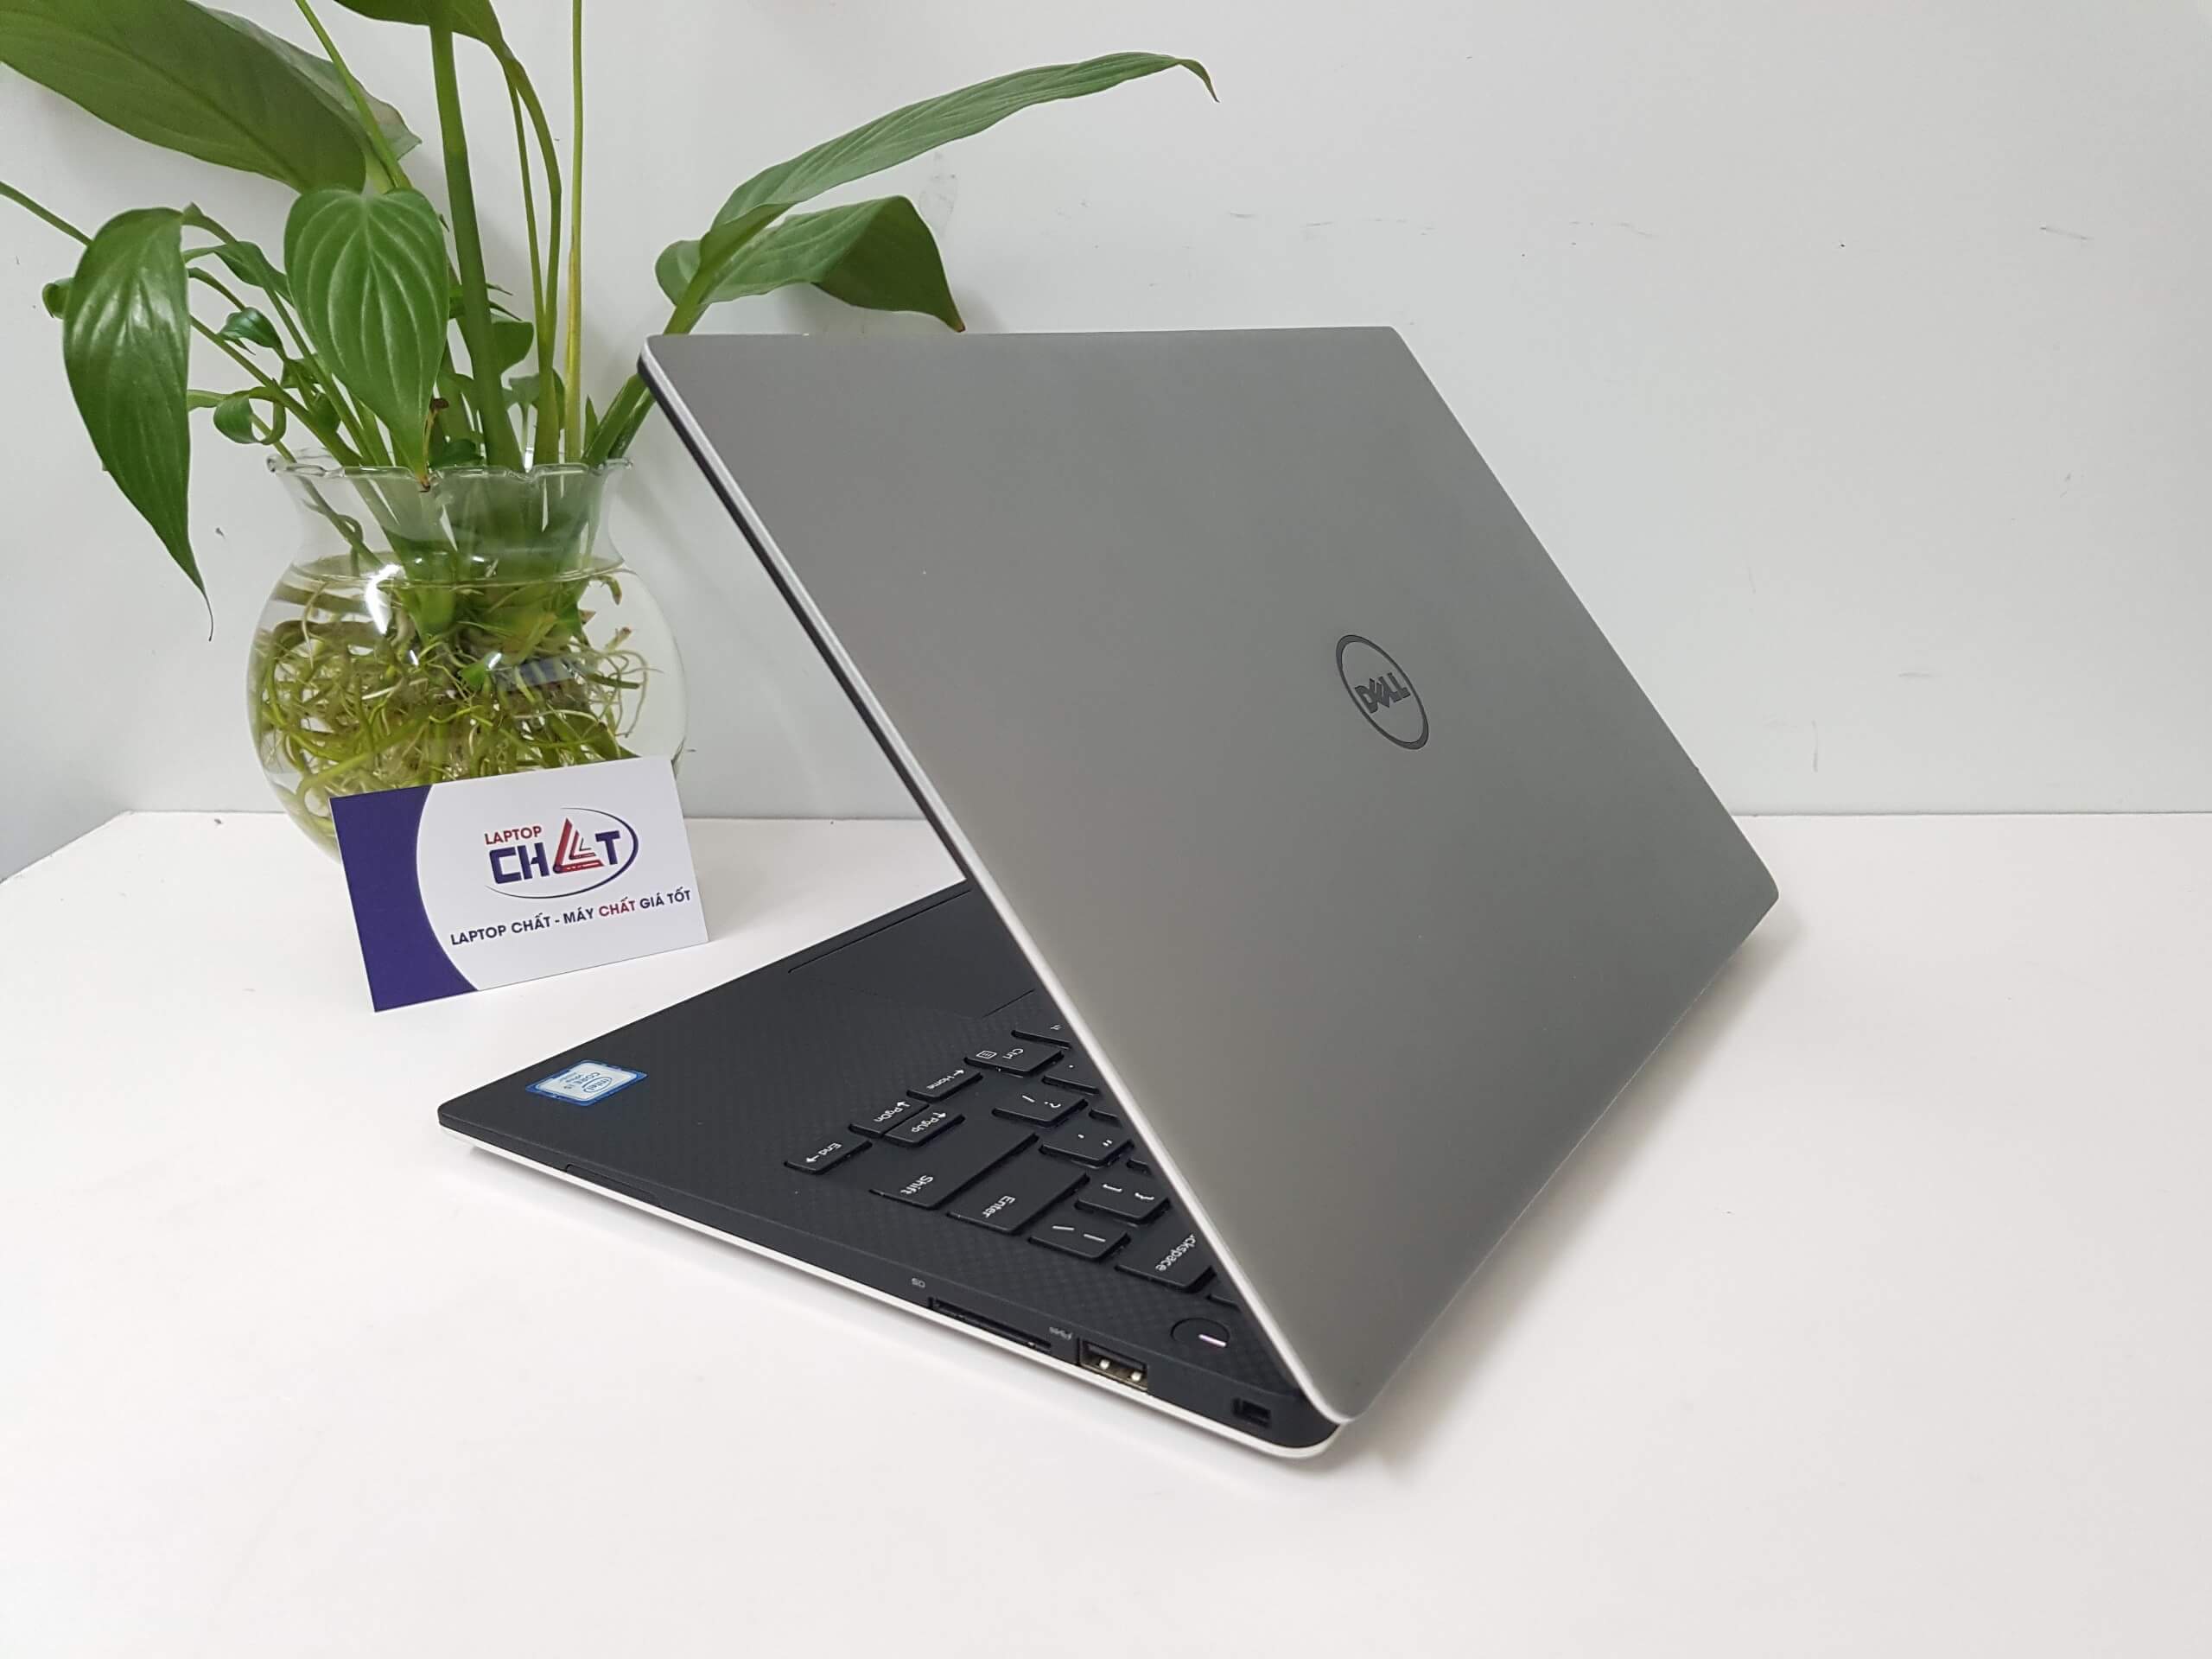 Dell XPS 13 9350 core i7 - Laptop Chất